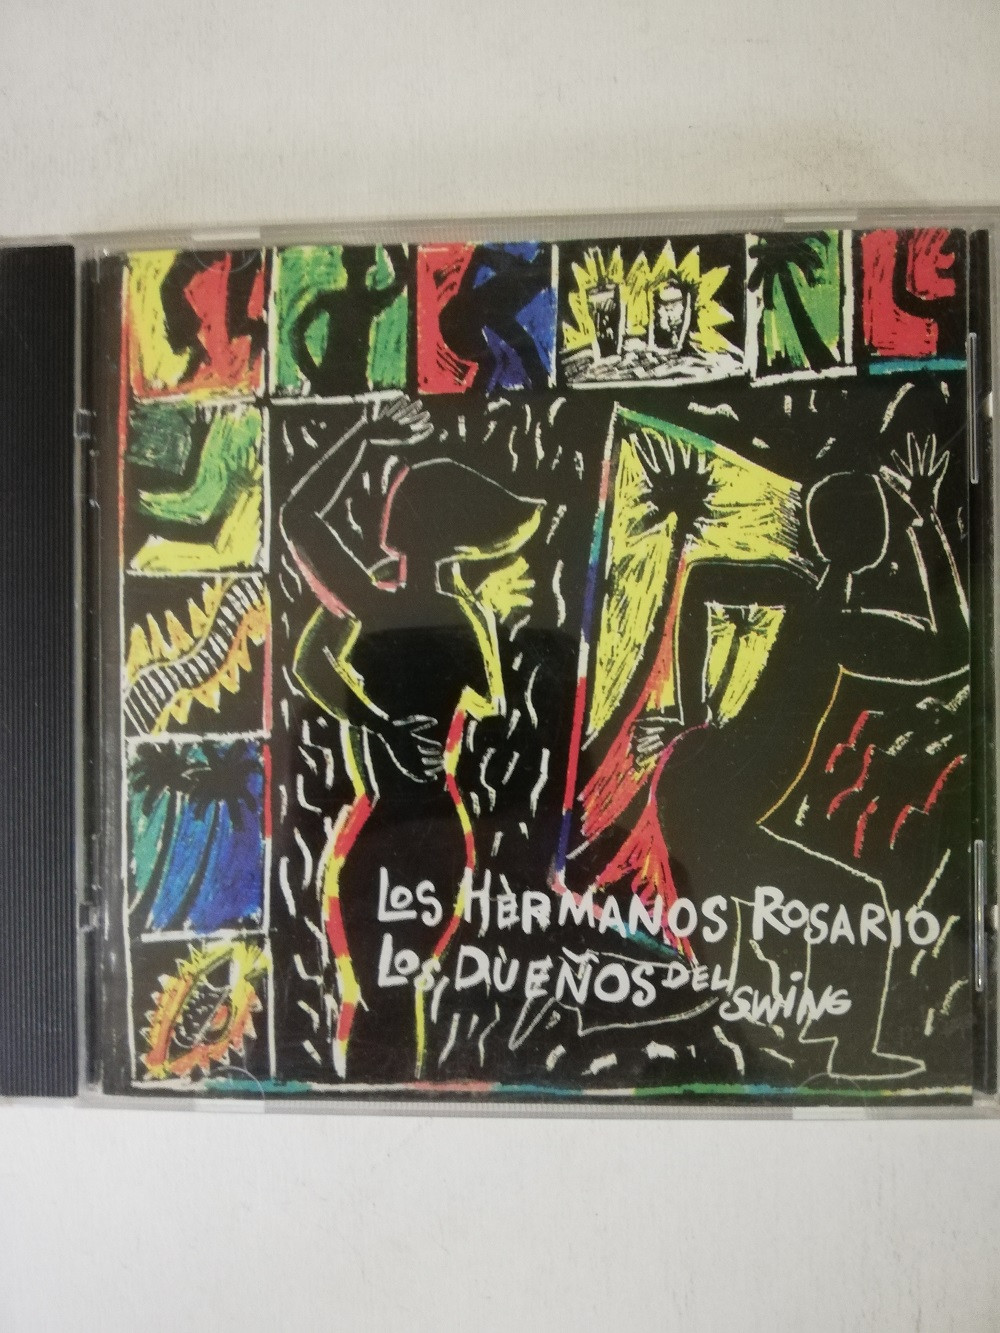 Imagen CD LOS HERMANOS ROSARIO - LOS DUEÑOS DEL SWING